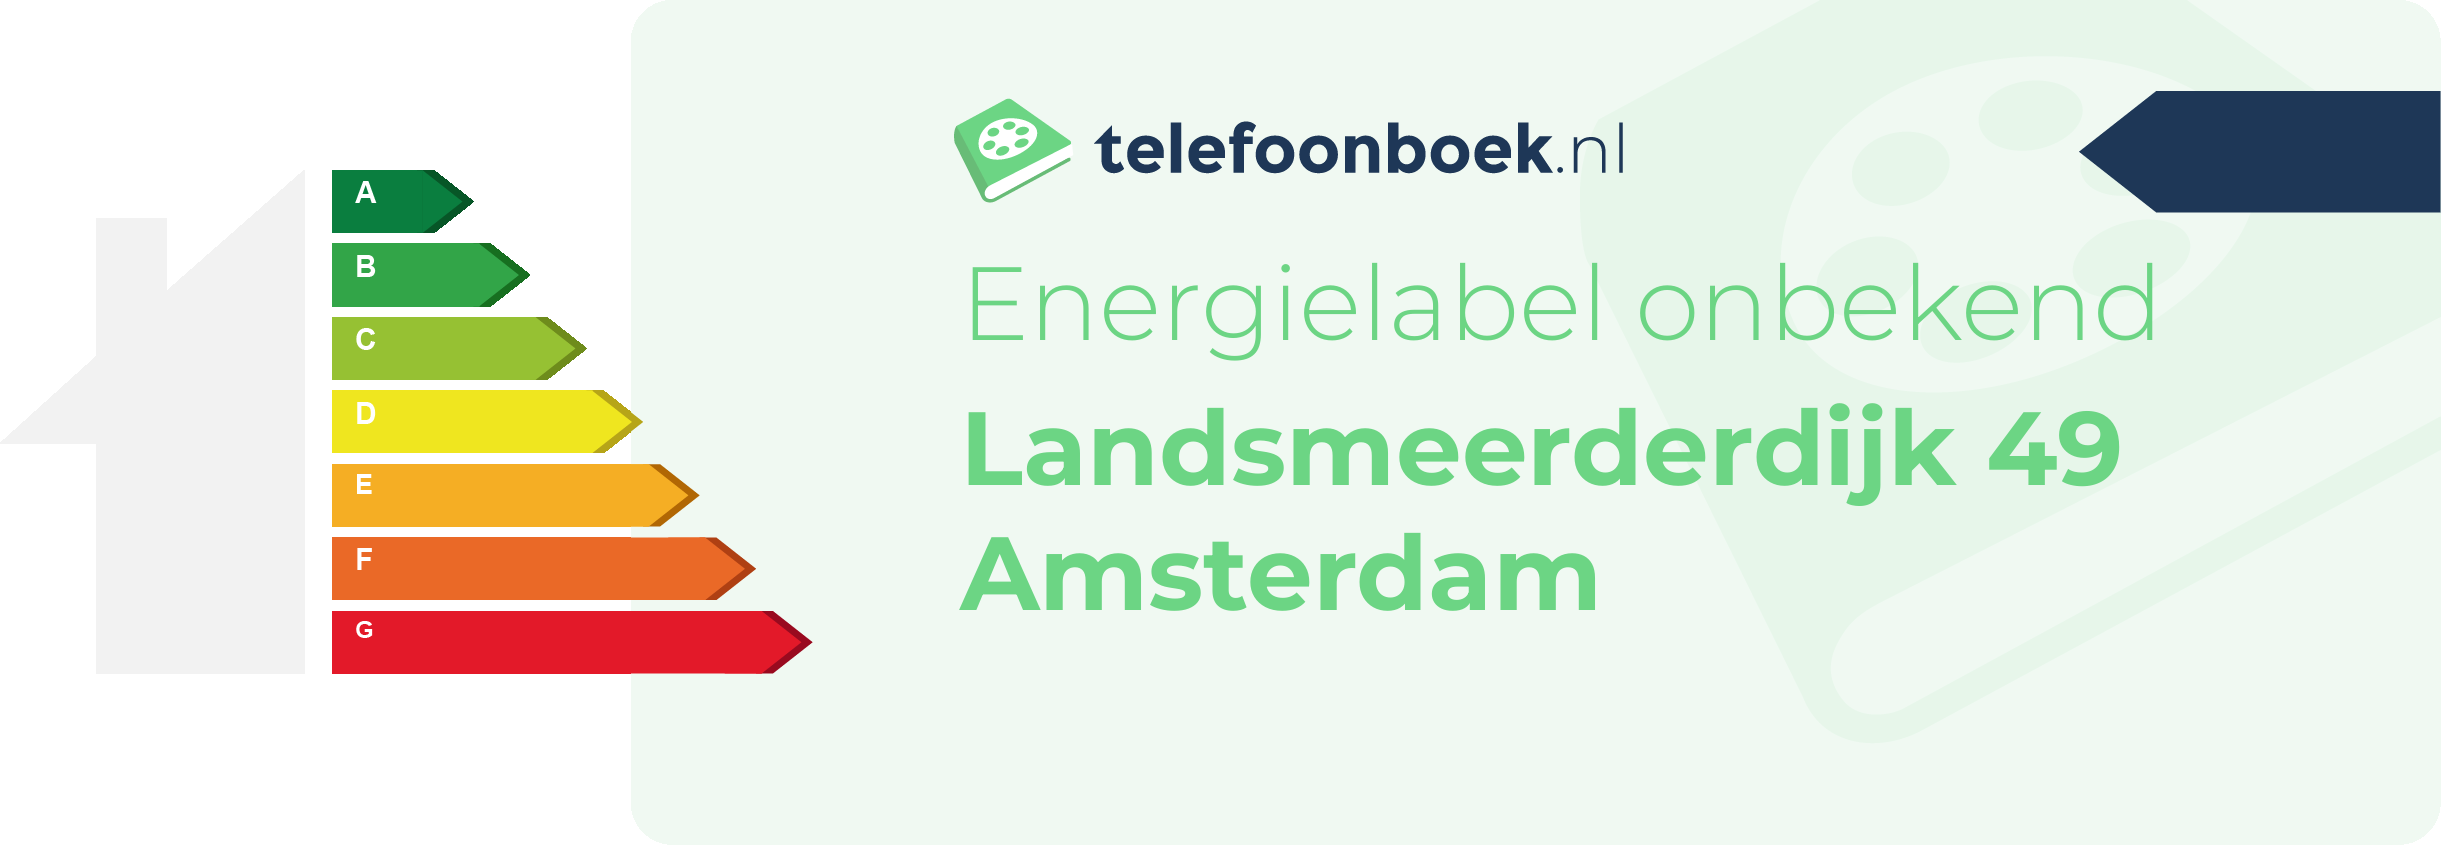 Energielabel Landsmeerderdijk 49 Amsterdam